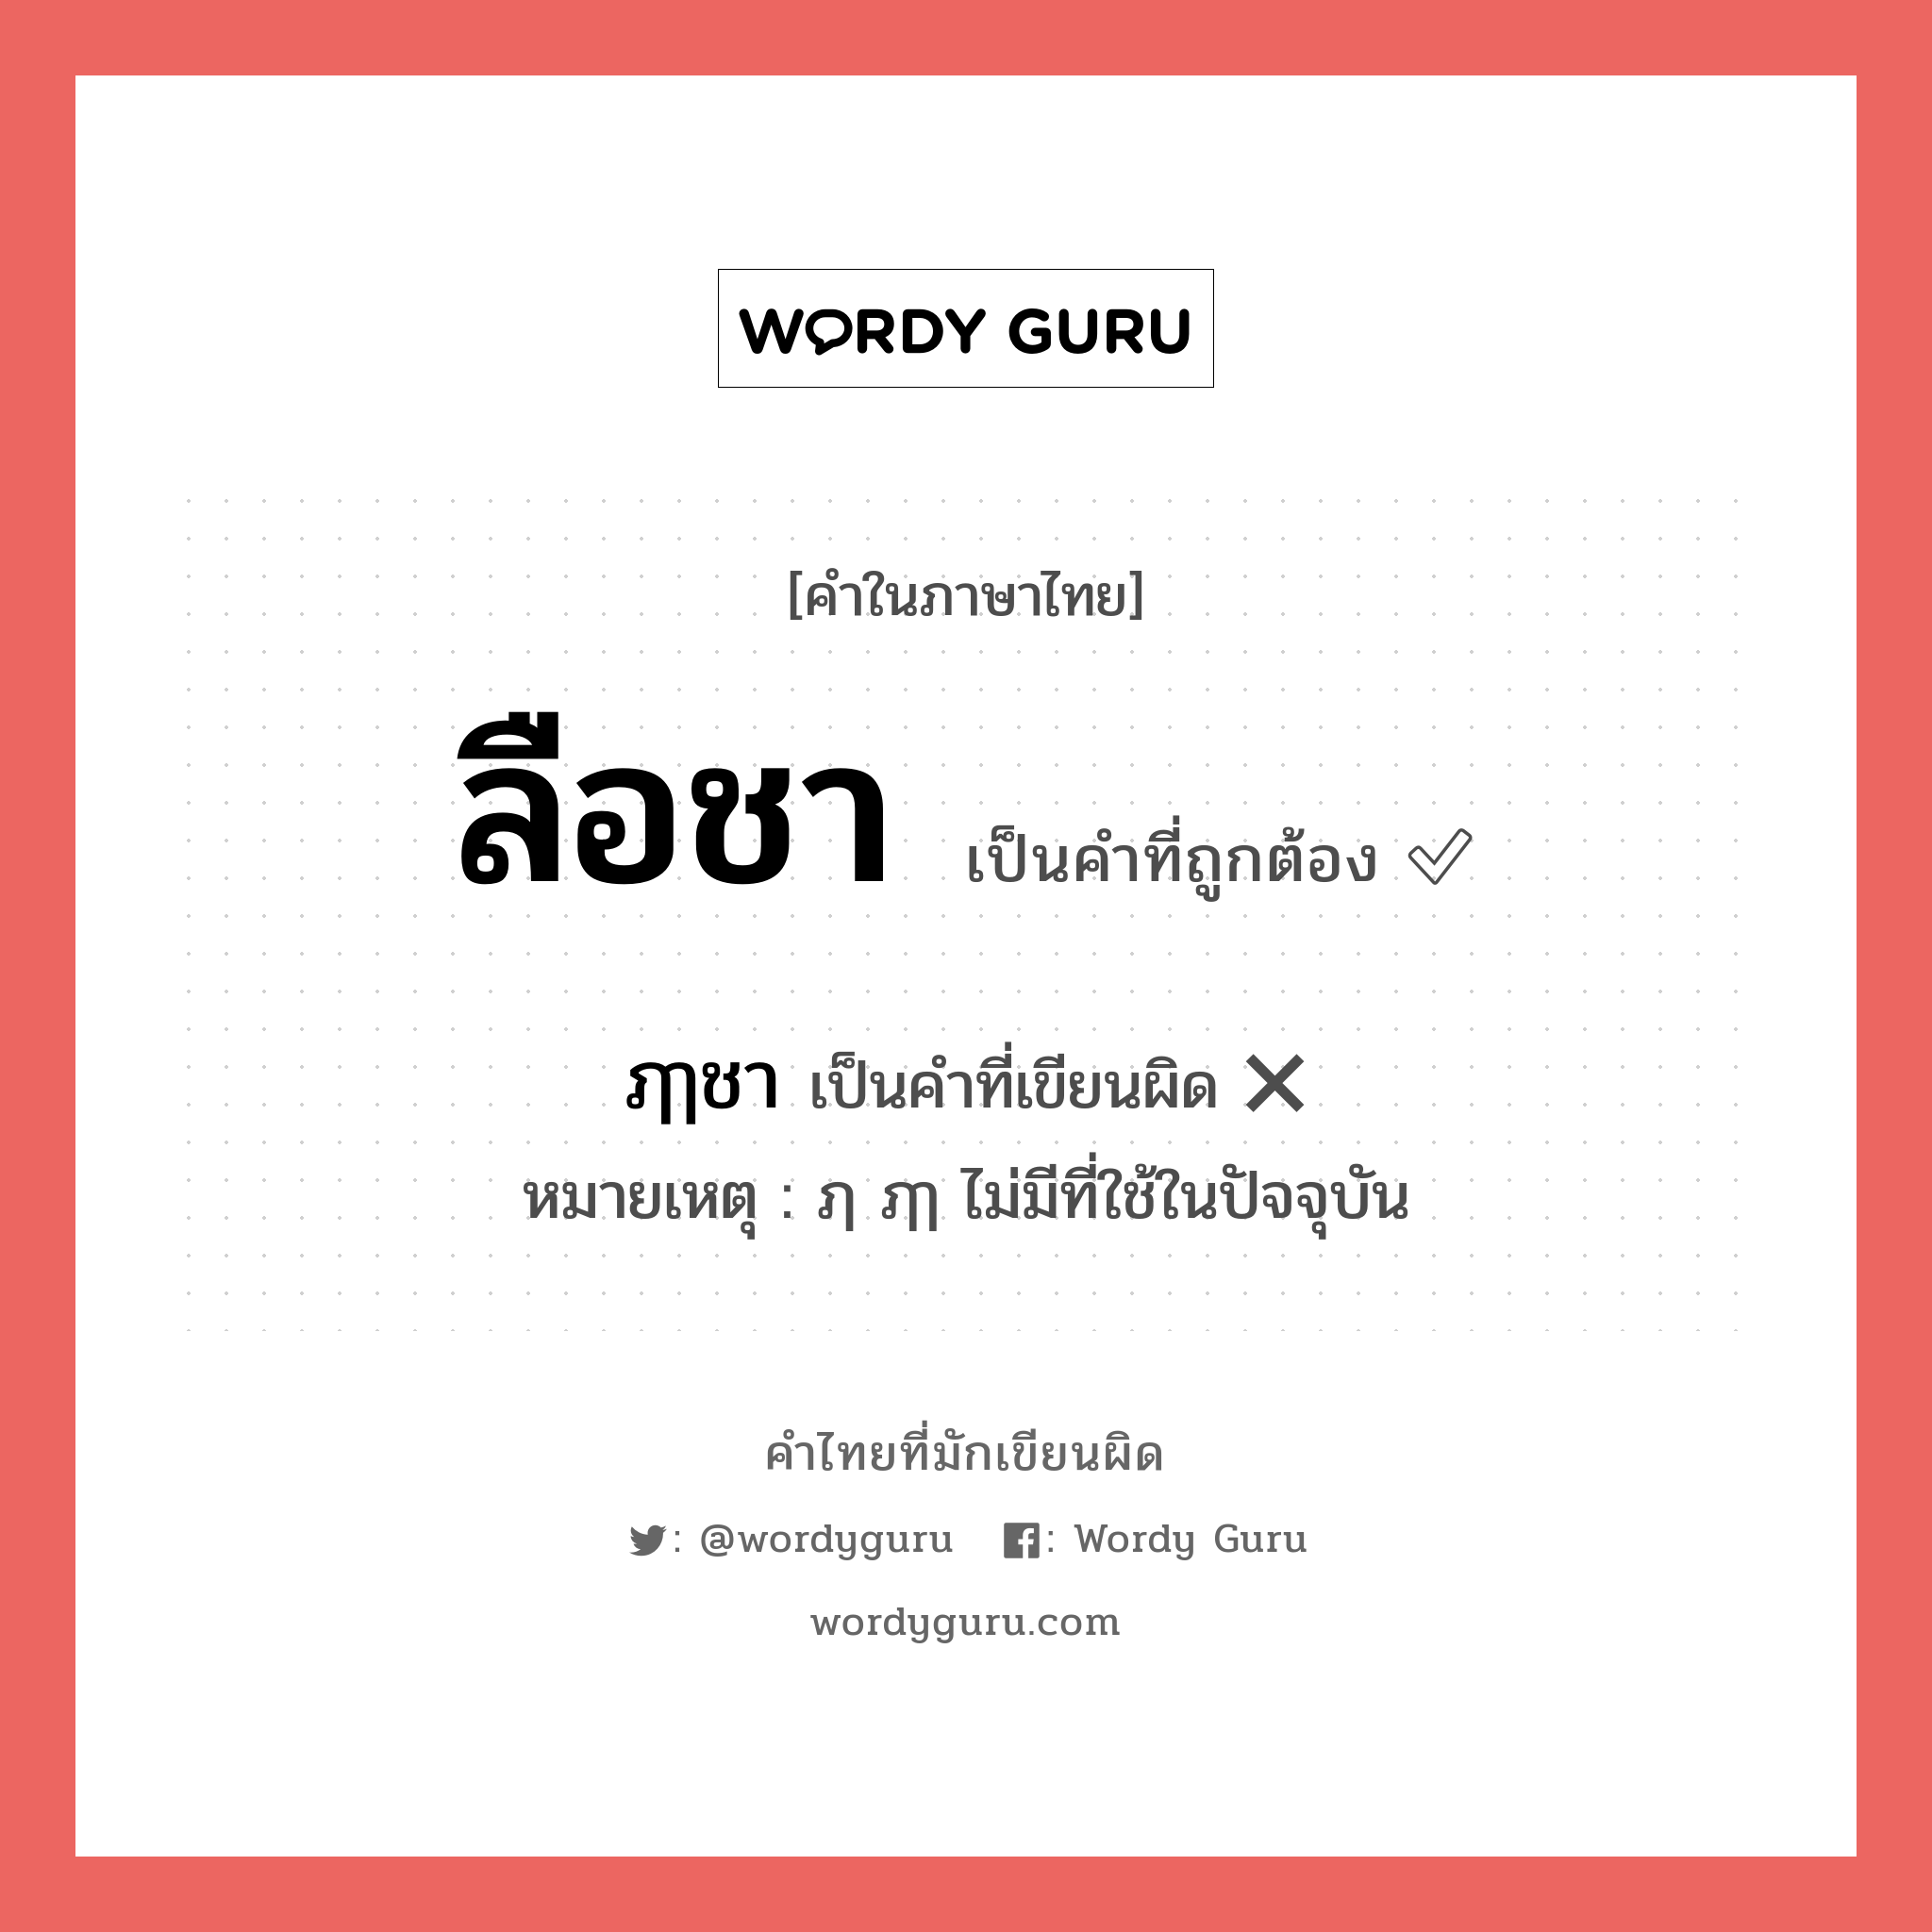 ลือชา หรือ ฦๅชา เขียนยังไง? คำไหนเขียนถูก?, คำในภาษาไทยที่มักเขียนผิด ลือชา คำที่ผิด ❌ ฦๅชา หมายเหตุ ฦ ฦๅ ไม่มีที่ใช้ในปัจจุบัน